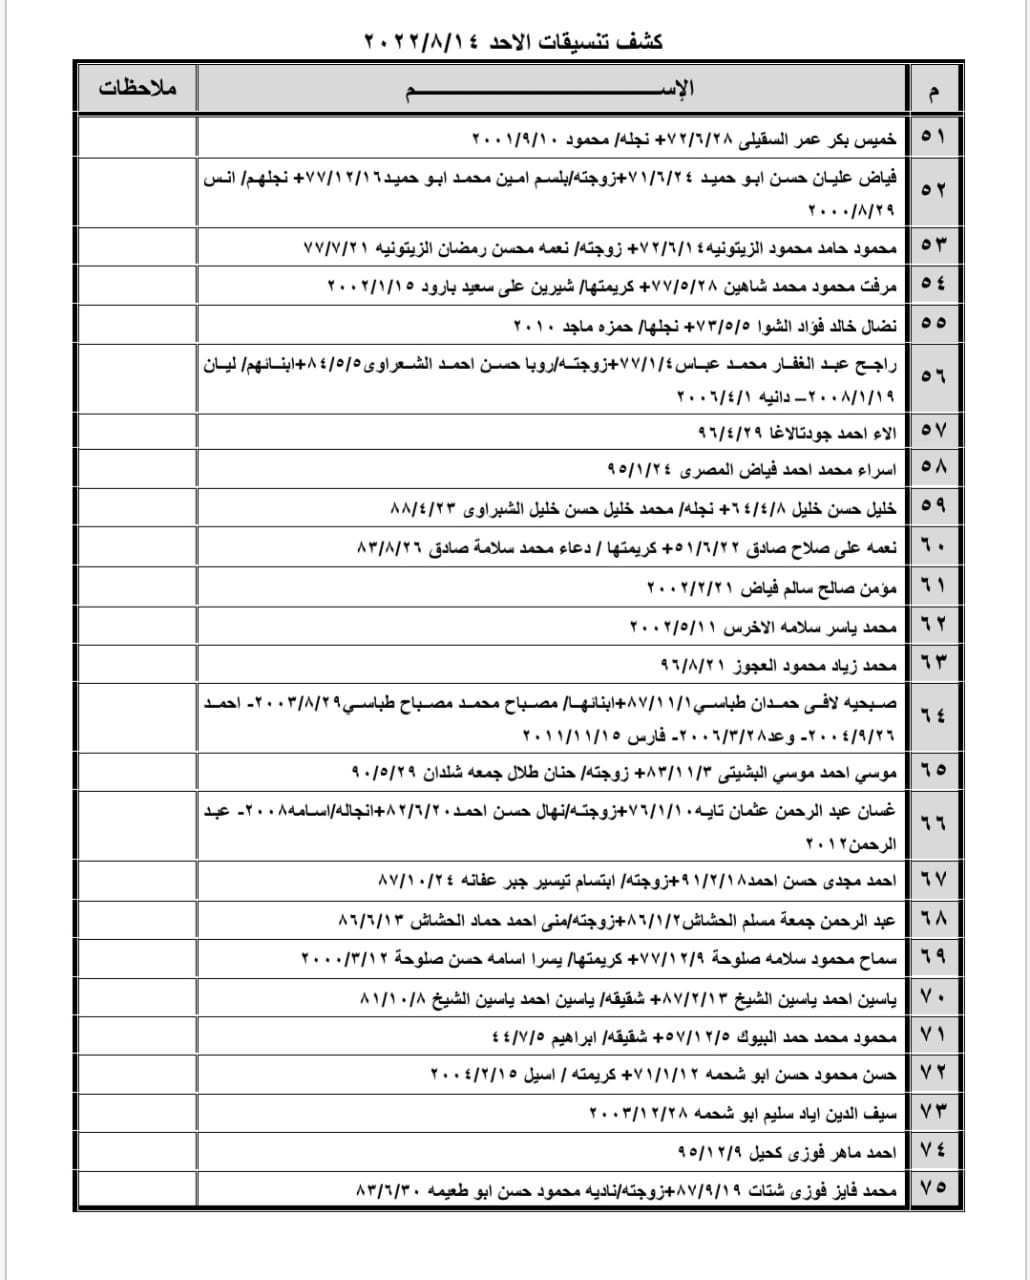 بالأسماء: كشف "تنسيقات مصرية" للسفر عبر معبر رفح الأحد 14 أغسطس 2022